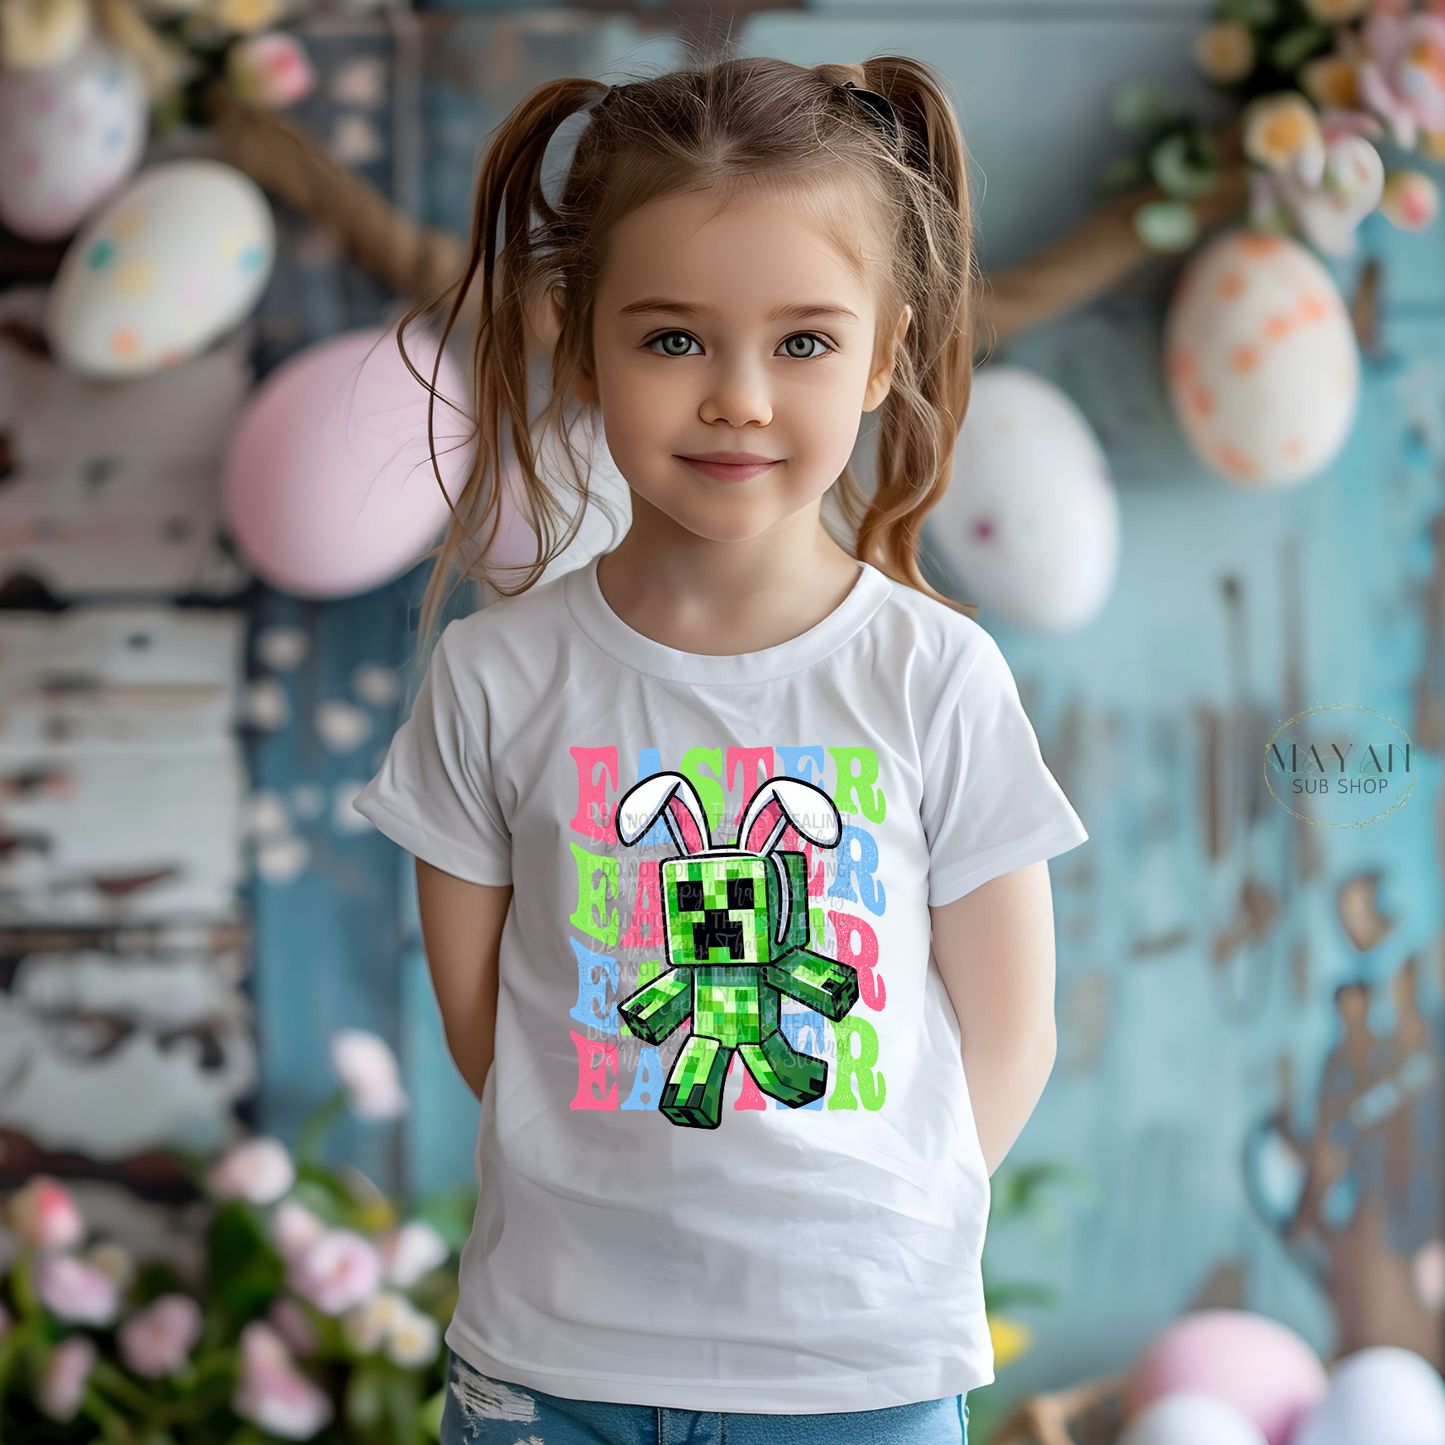 Easter Gamer Kids Shirt - Mayan Sub Shop